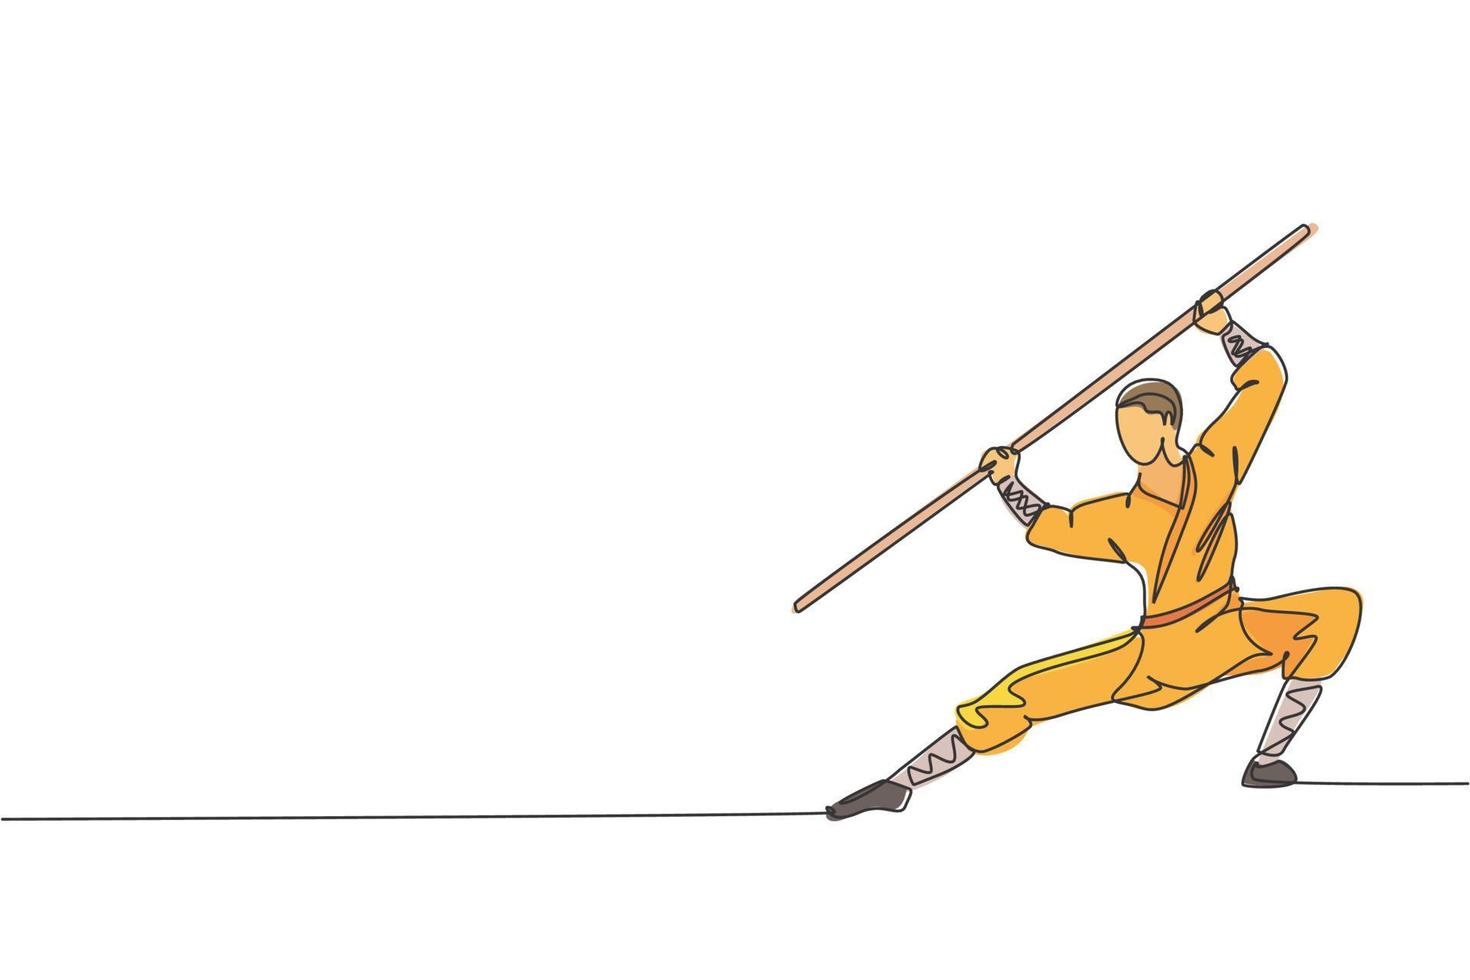 un dibujo de línea continua joven monje shaolin practica kung fu usando un bastón largo en el suelo del templo. concepto de deporte de combate chino tradicional. ilustración de vector gráfico de diseño de dibujo de una sola línea